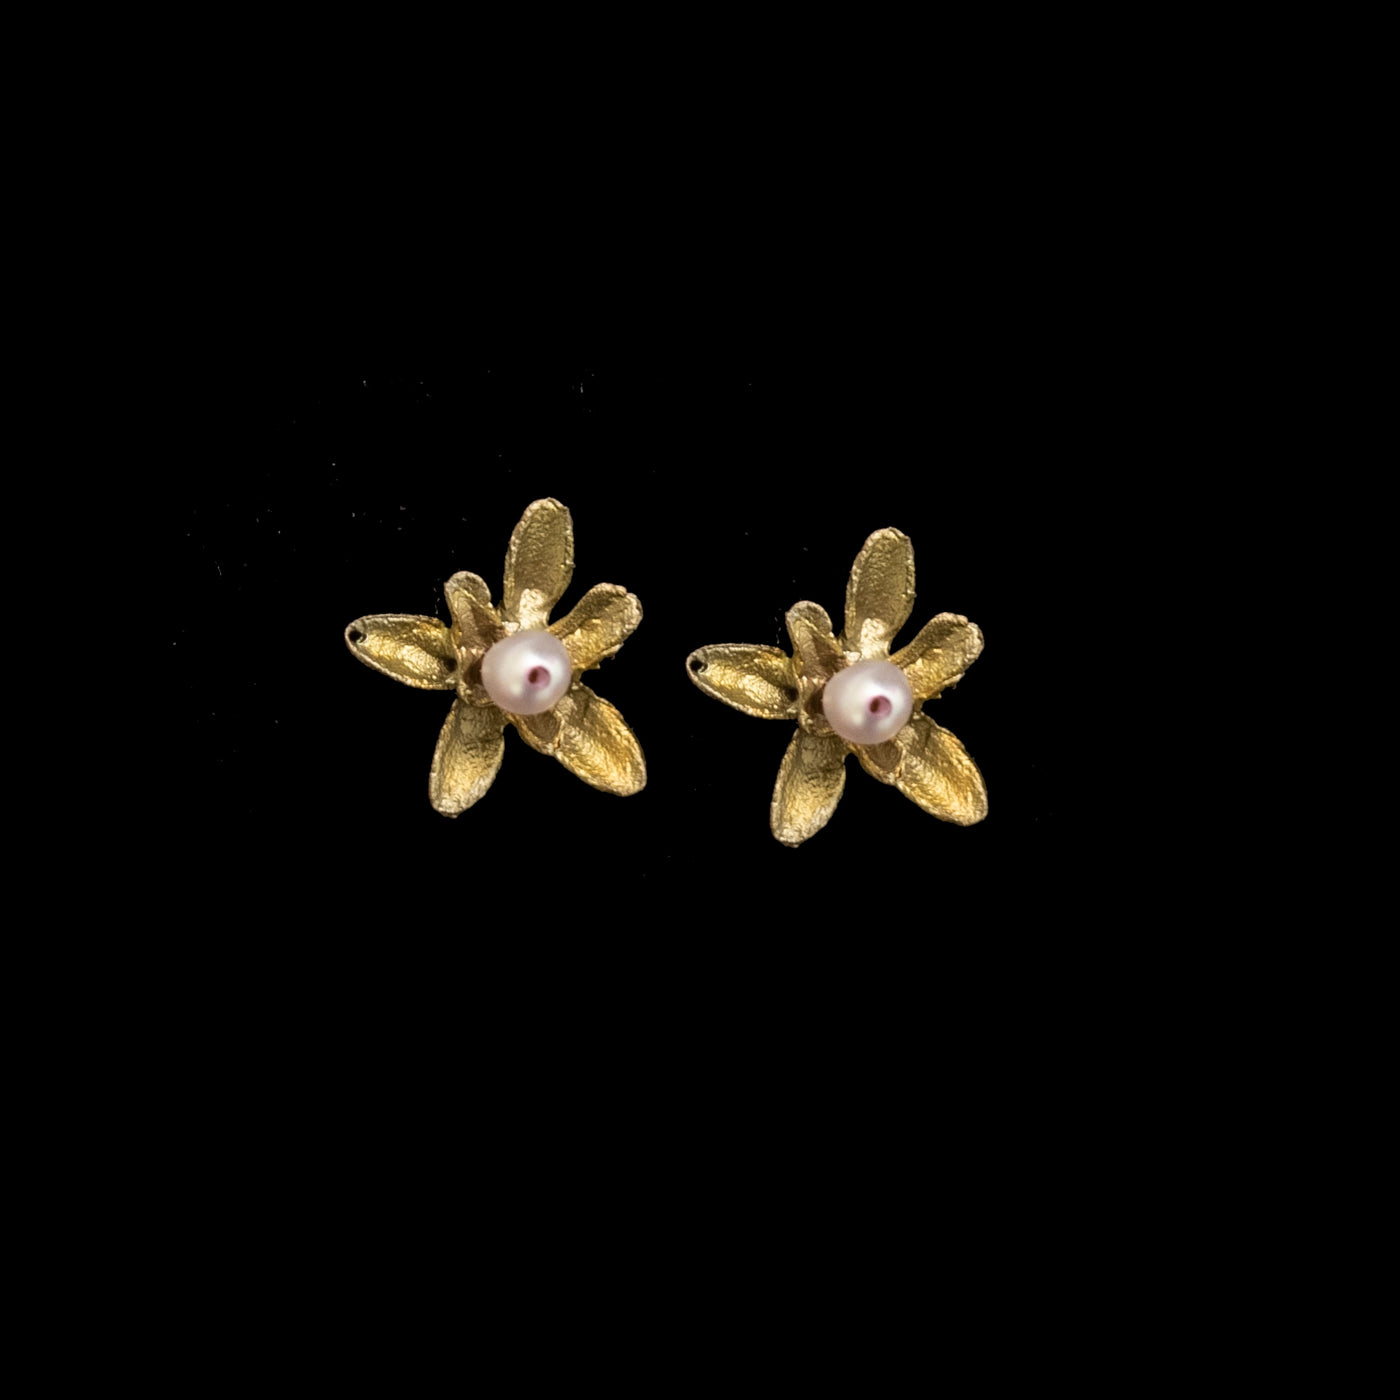 Flowering Thyme Post Earrings